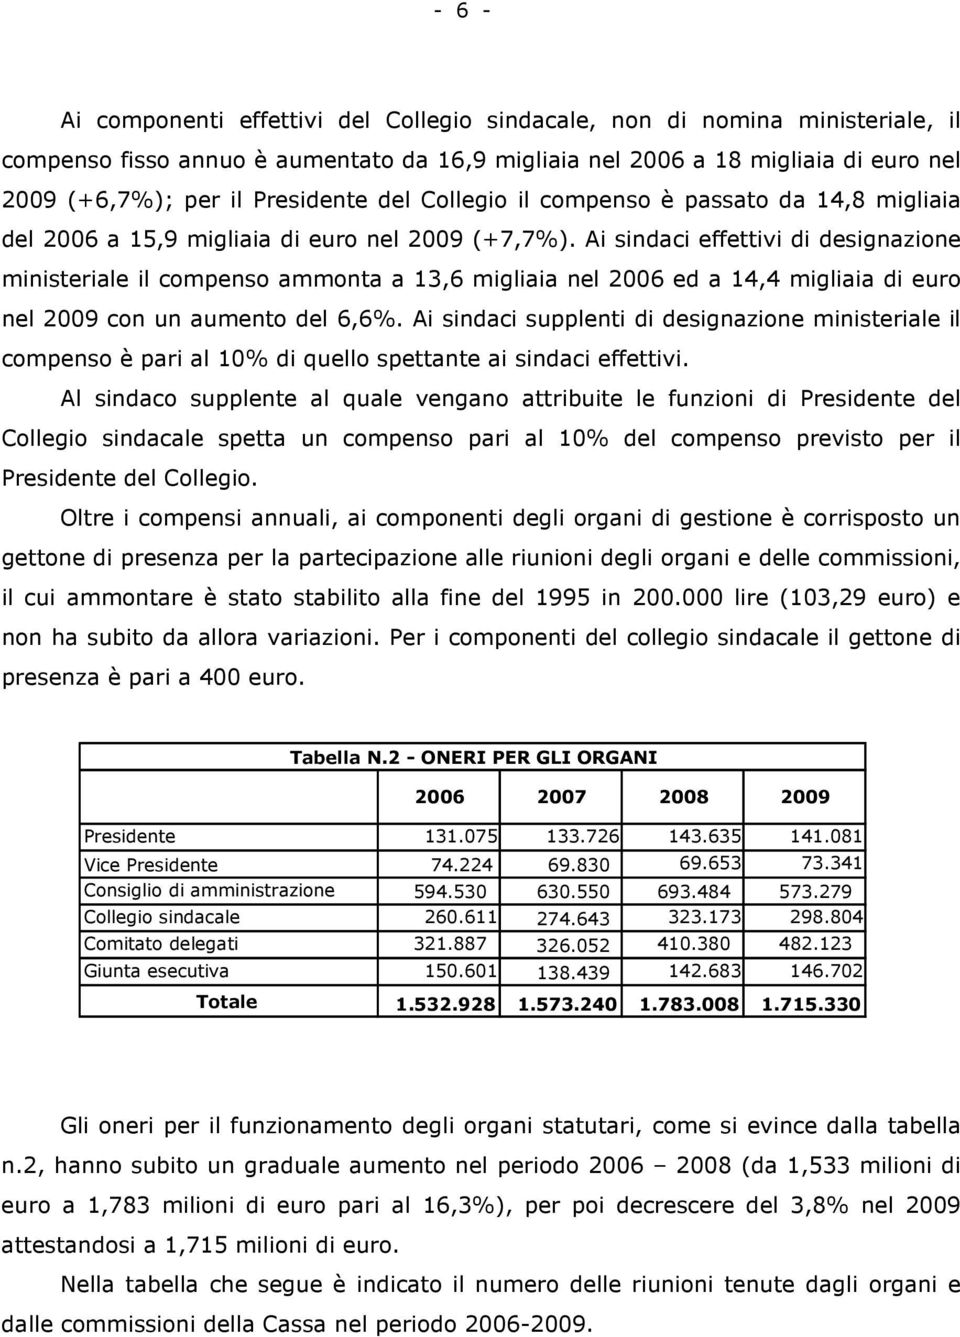 Ai sindaci effettivi di designazione ministeriale il compenso ammonta a 13,6 migliaia nel 2006 ed a 14,4 migliaia di euro nel 2009 con un aumento del 6,6%.